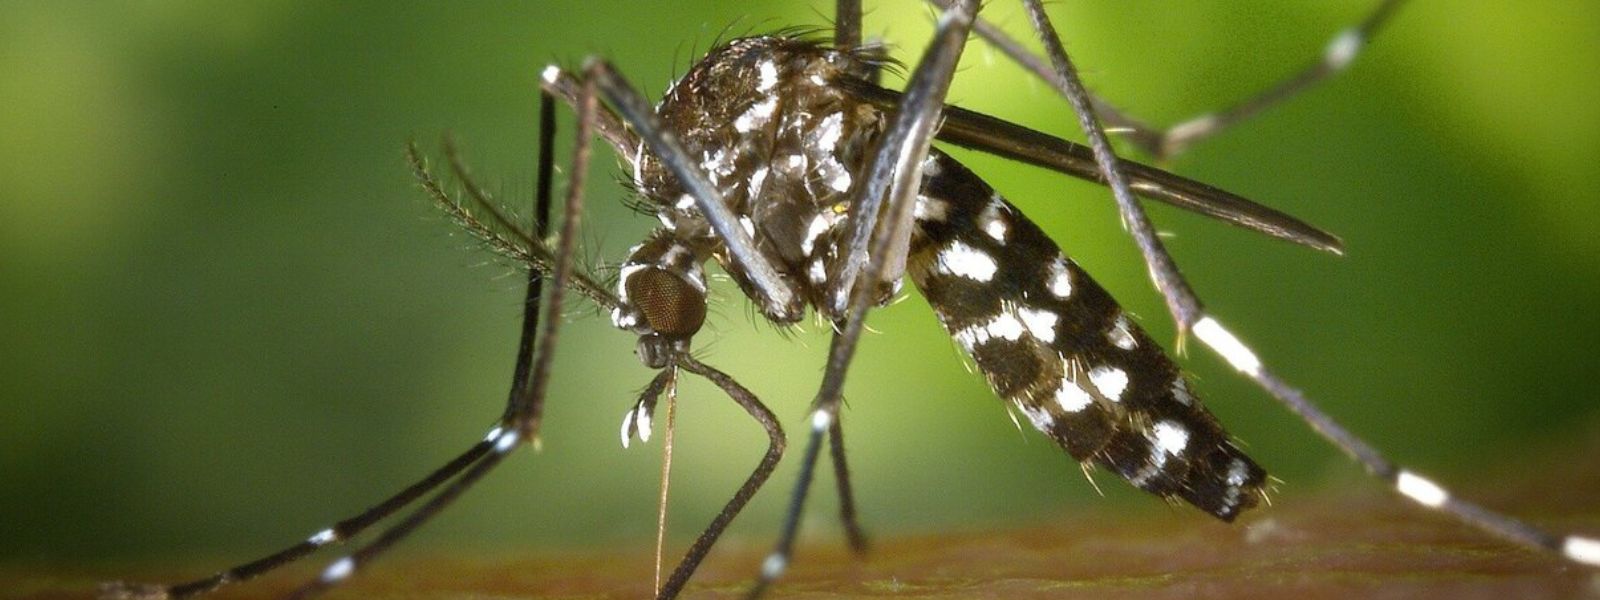 Dengue risk increases in Sri Lanka